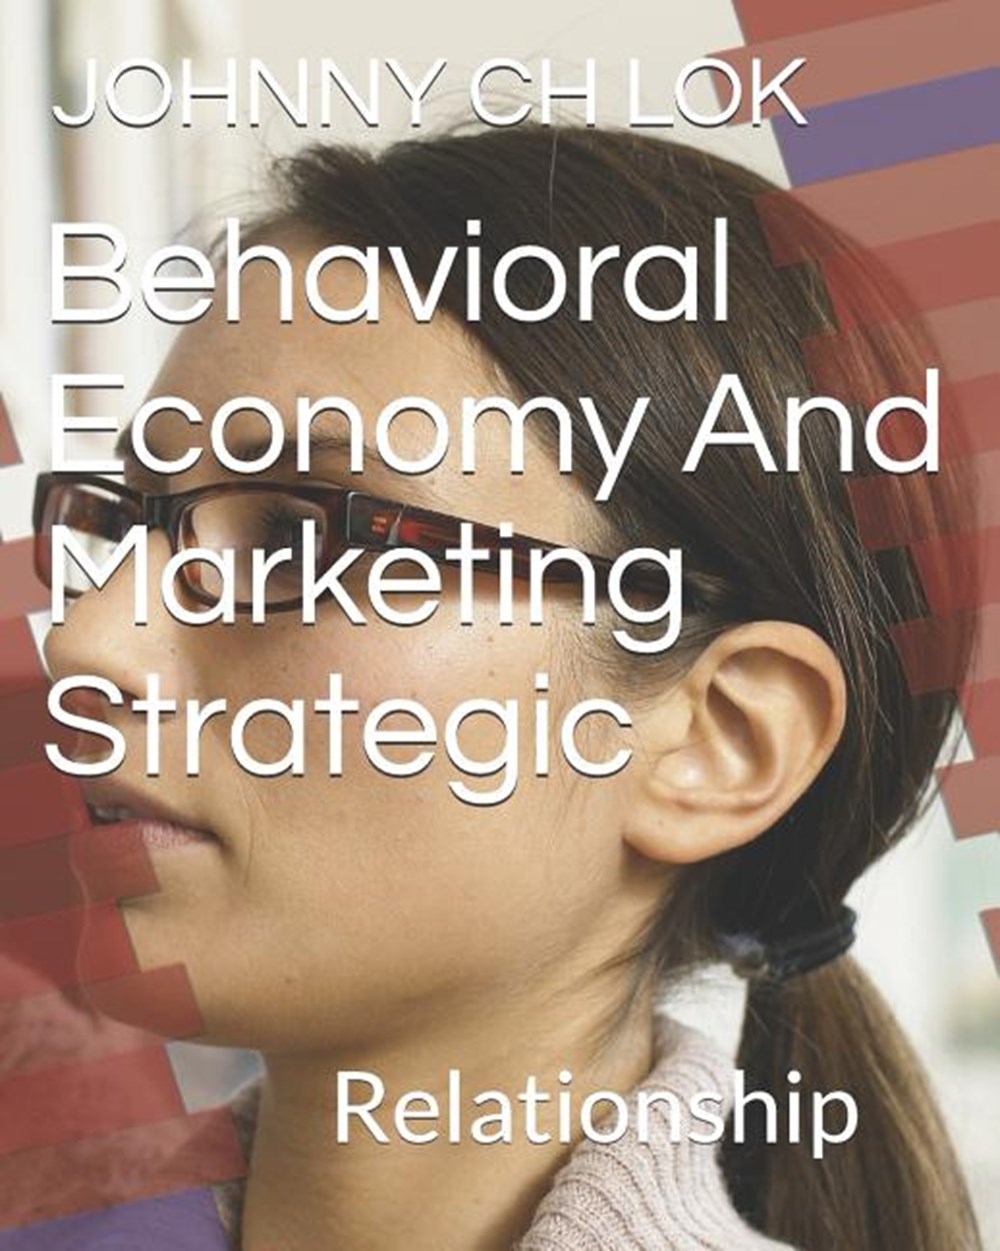 Behavioral Economy And Marketing Strategic: Relationship